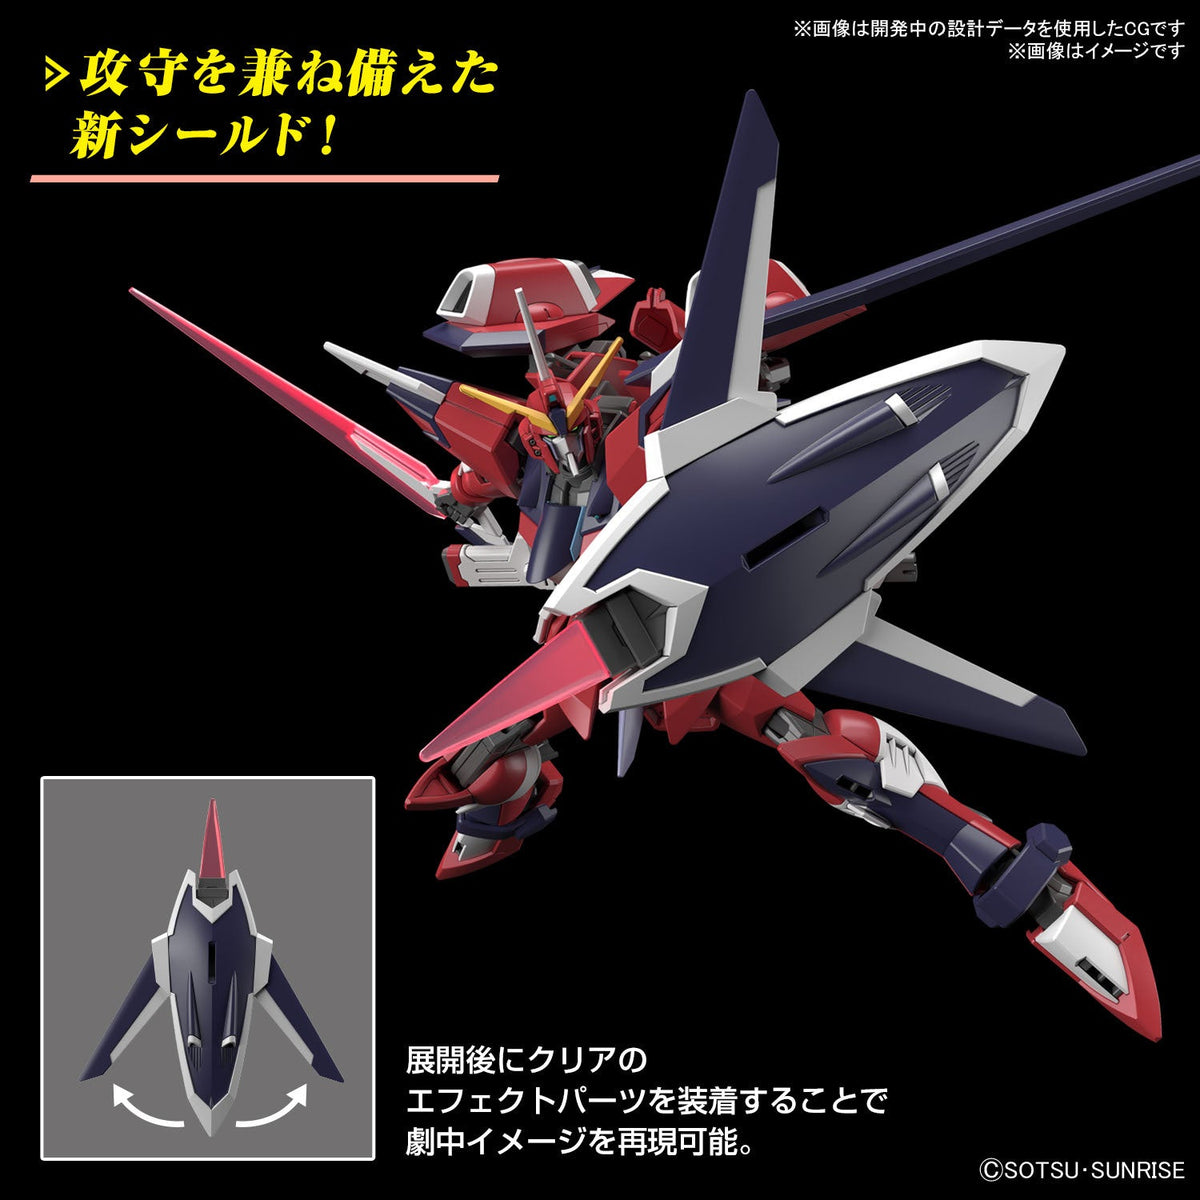 Gunpla HG 1/144 Immortal Justice Gundam-Bandai-Ace Cards &amp; Collectibles